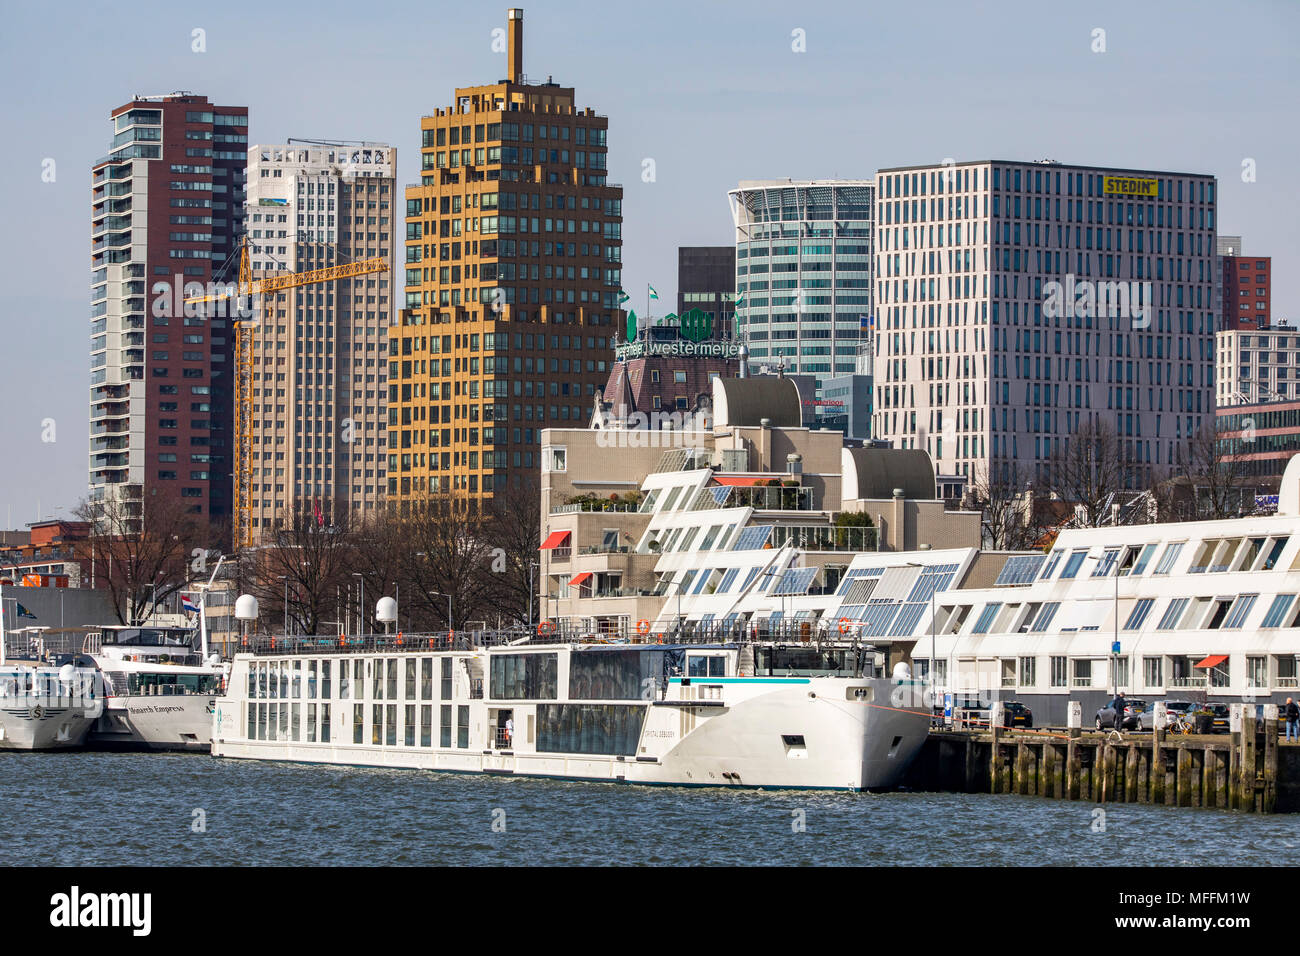 L'horizon de Rotterdam, sur la Nieuwe Maas, rivière, des gratte-ciel, bâtiments de la ville, rivière aux Pays-Bas, les navires de croisière, Banque D'Images